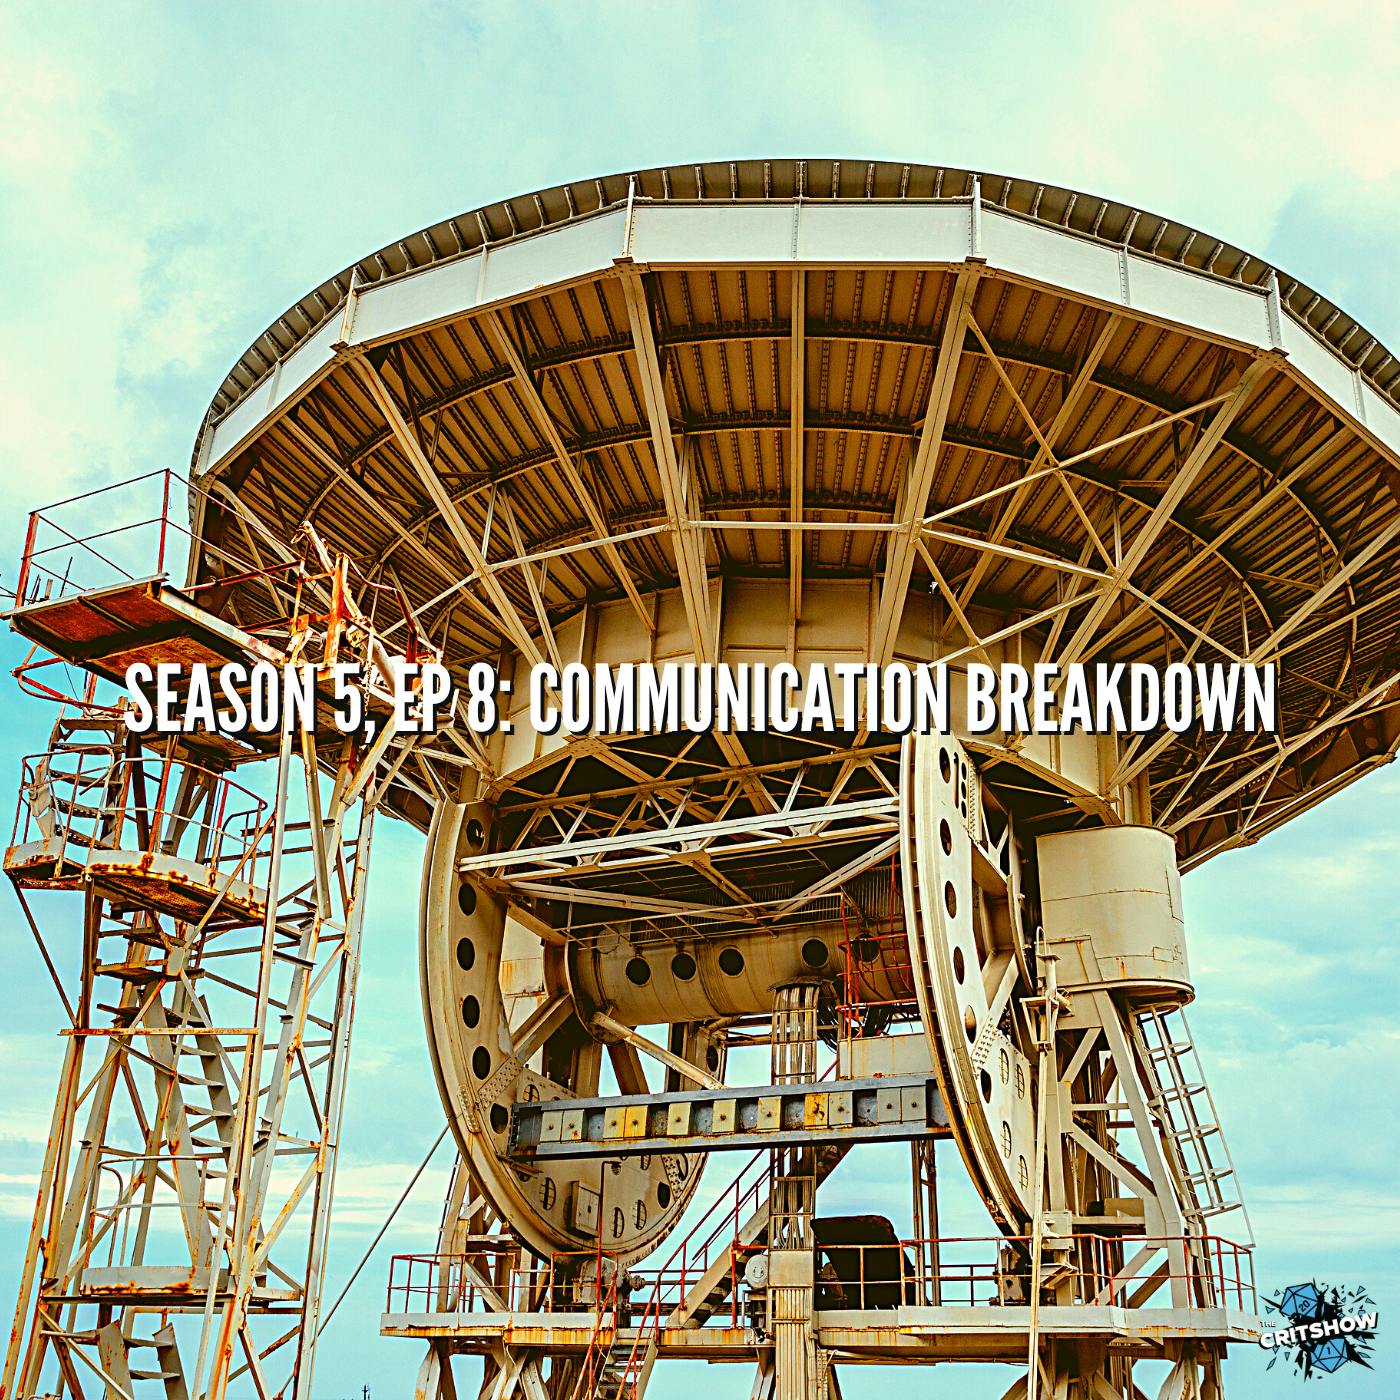 Communication Breakdown (S5, E8)